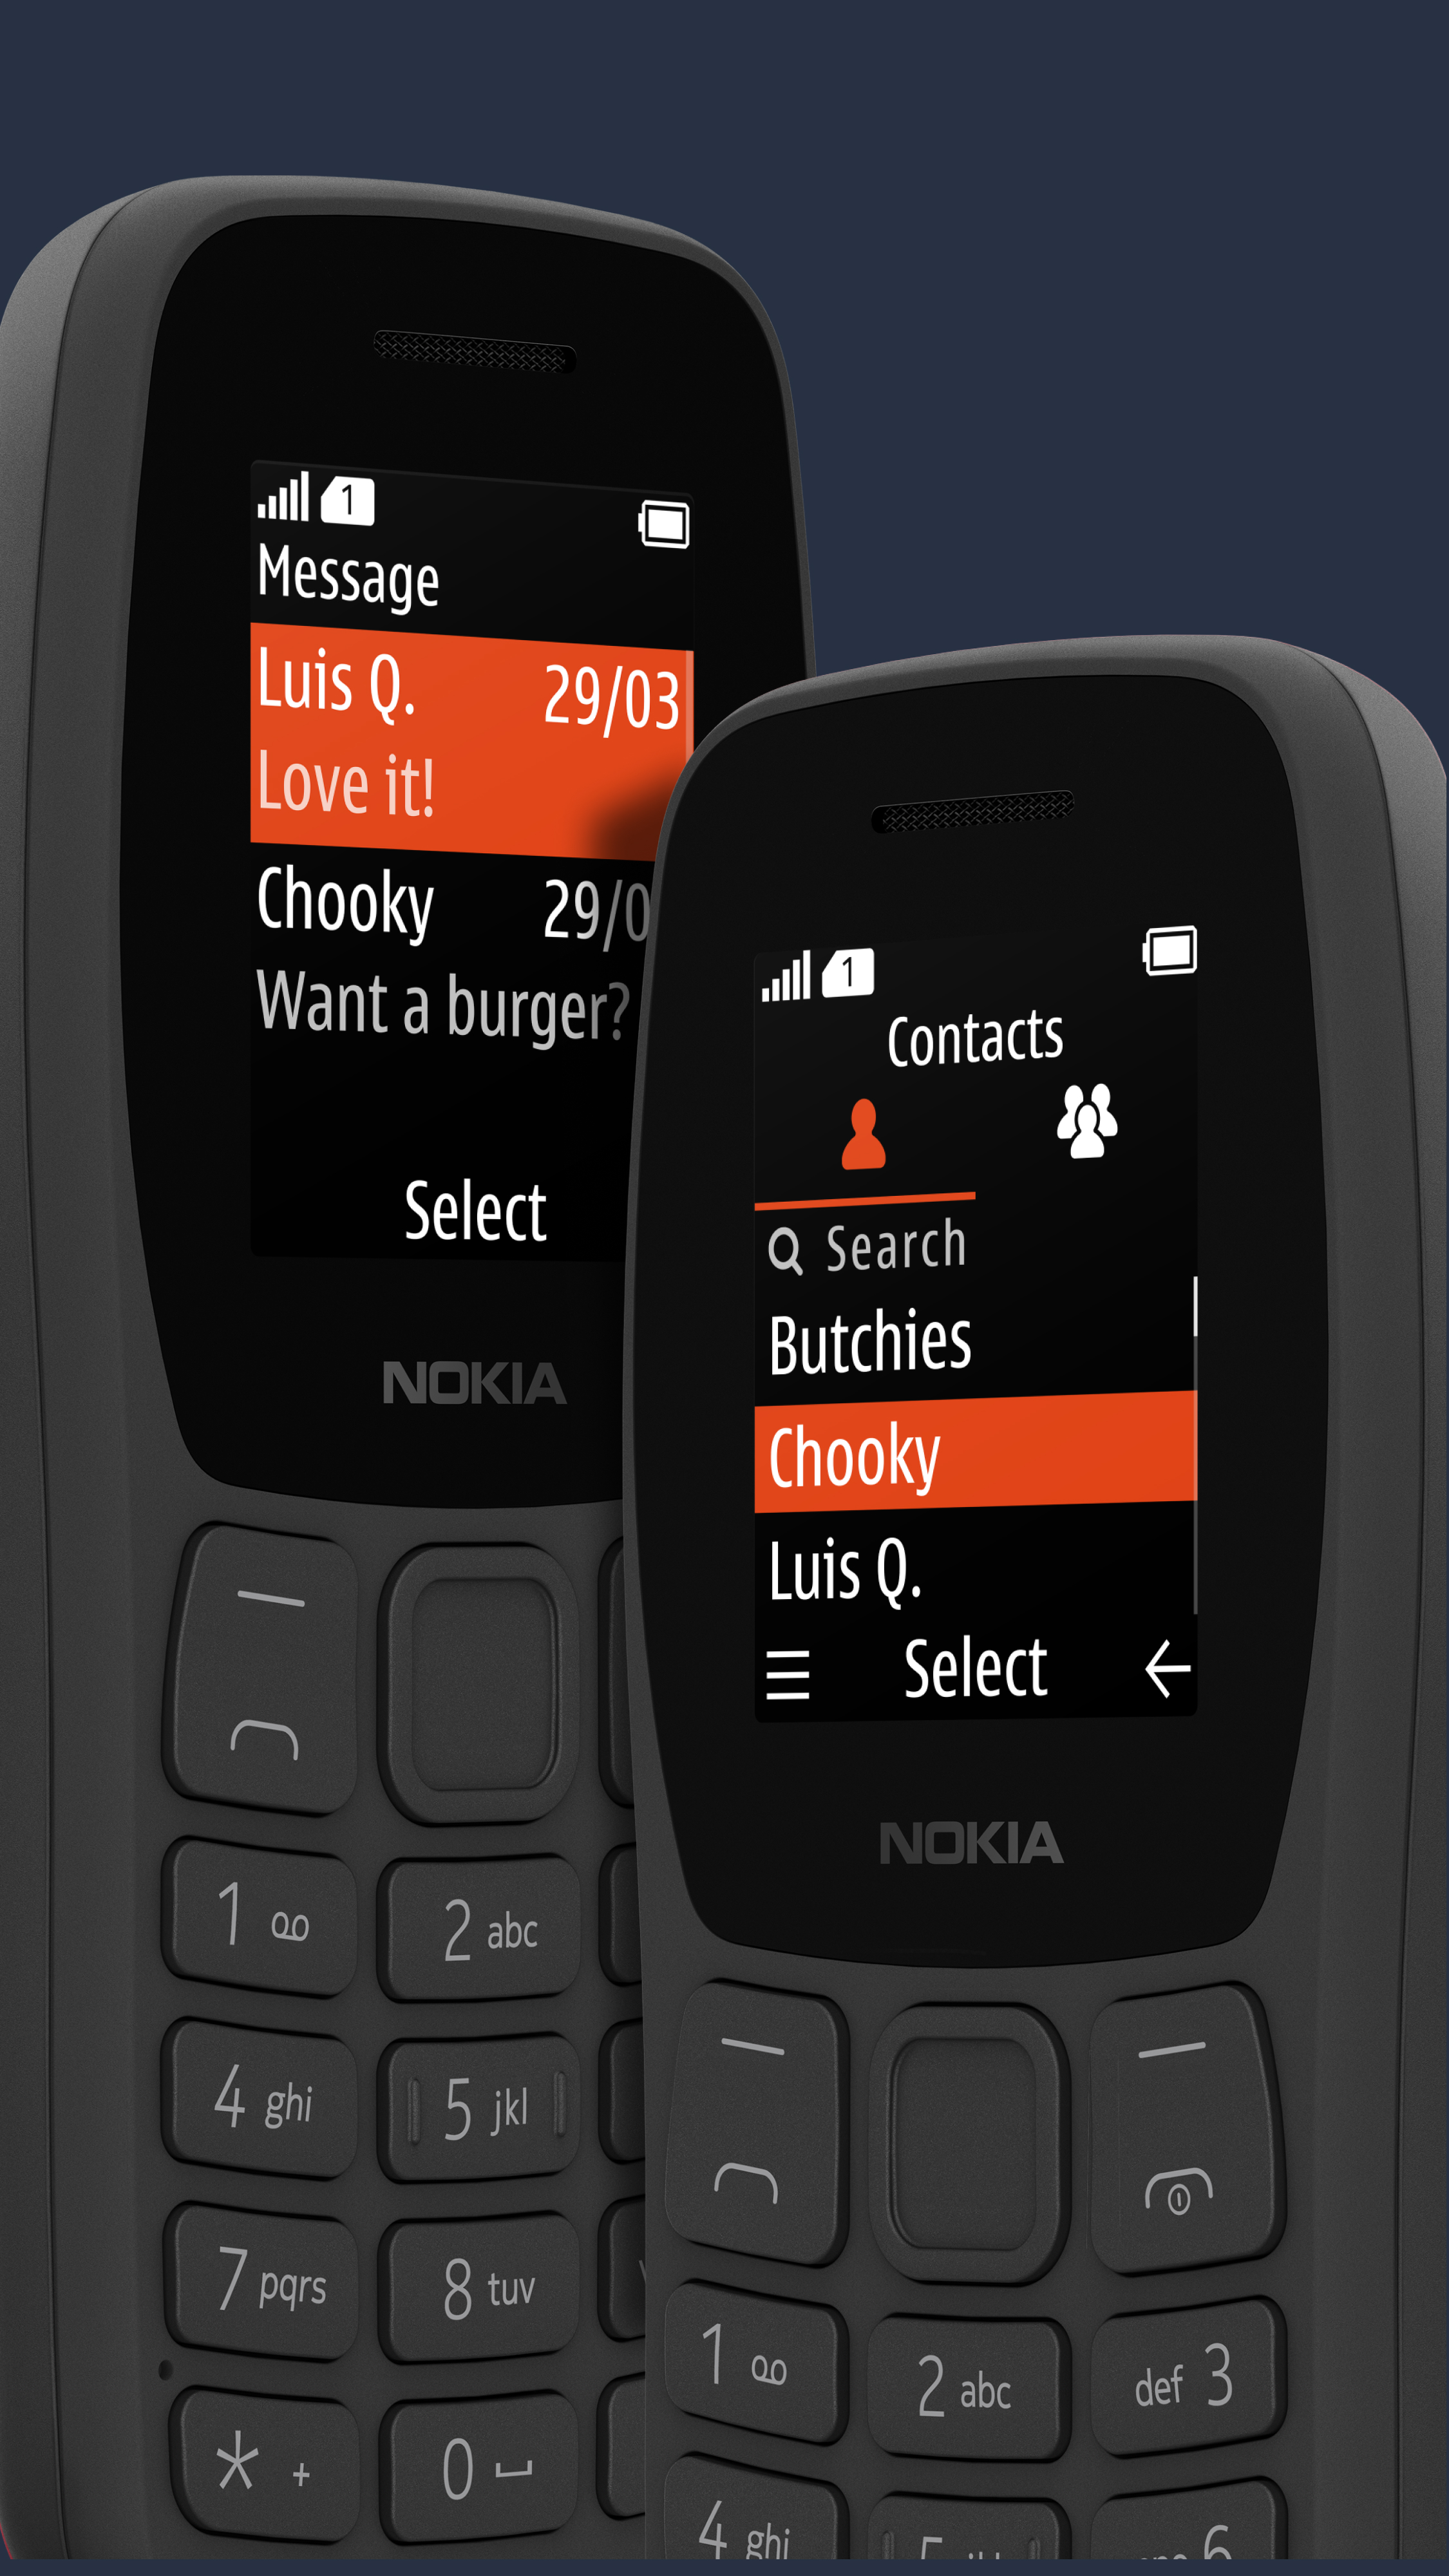 Nokia 105: Bạn muốn sở hữu một chiếc điện thoại di động tính năng đầy đủ mà giá thành không quá cao? Nokia 105 sẽ là sự lựa chọn hoàn hảo với khả năng thực hiện cuộc gọi, gửi tin nhắn, nghe nhạc cùng một số tính năng gia tăng giá trị.